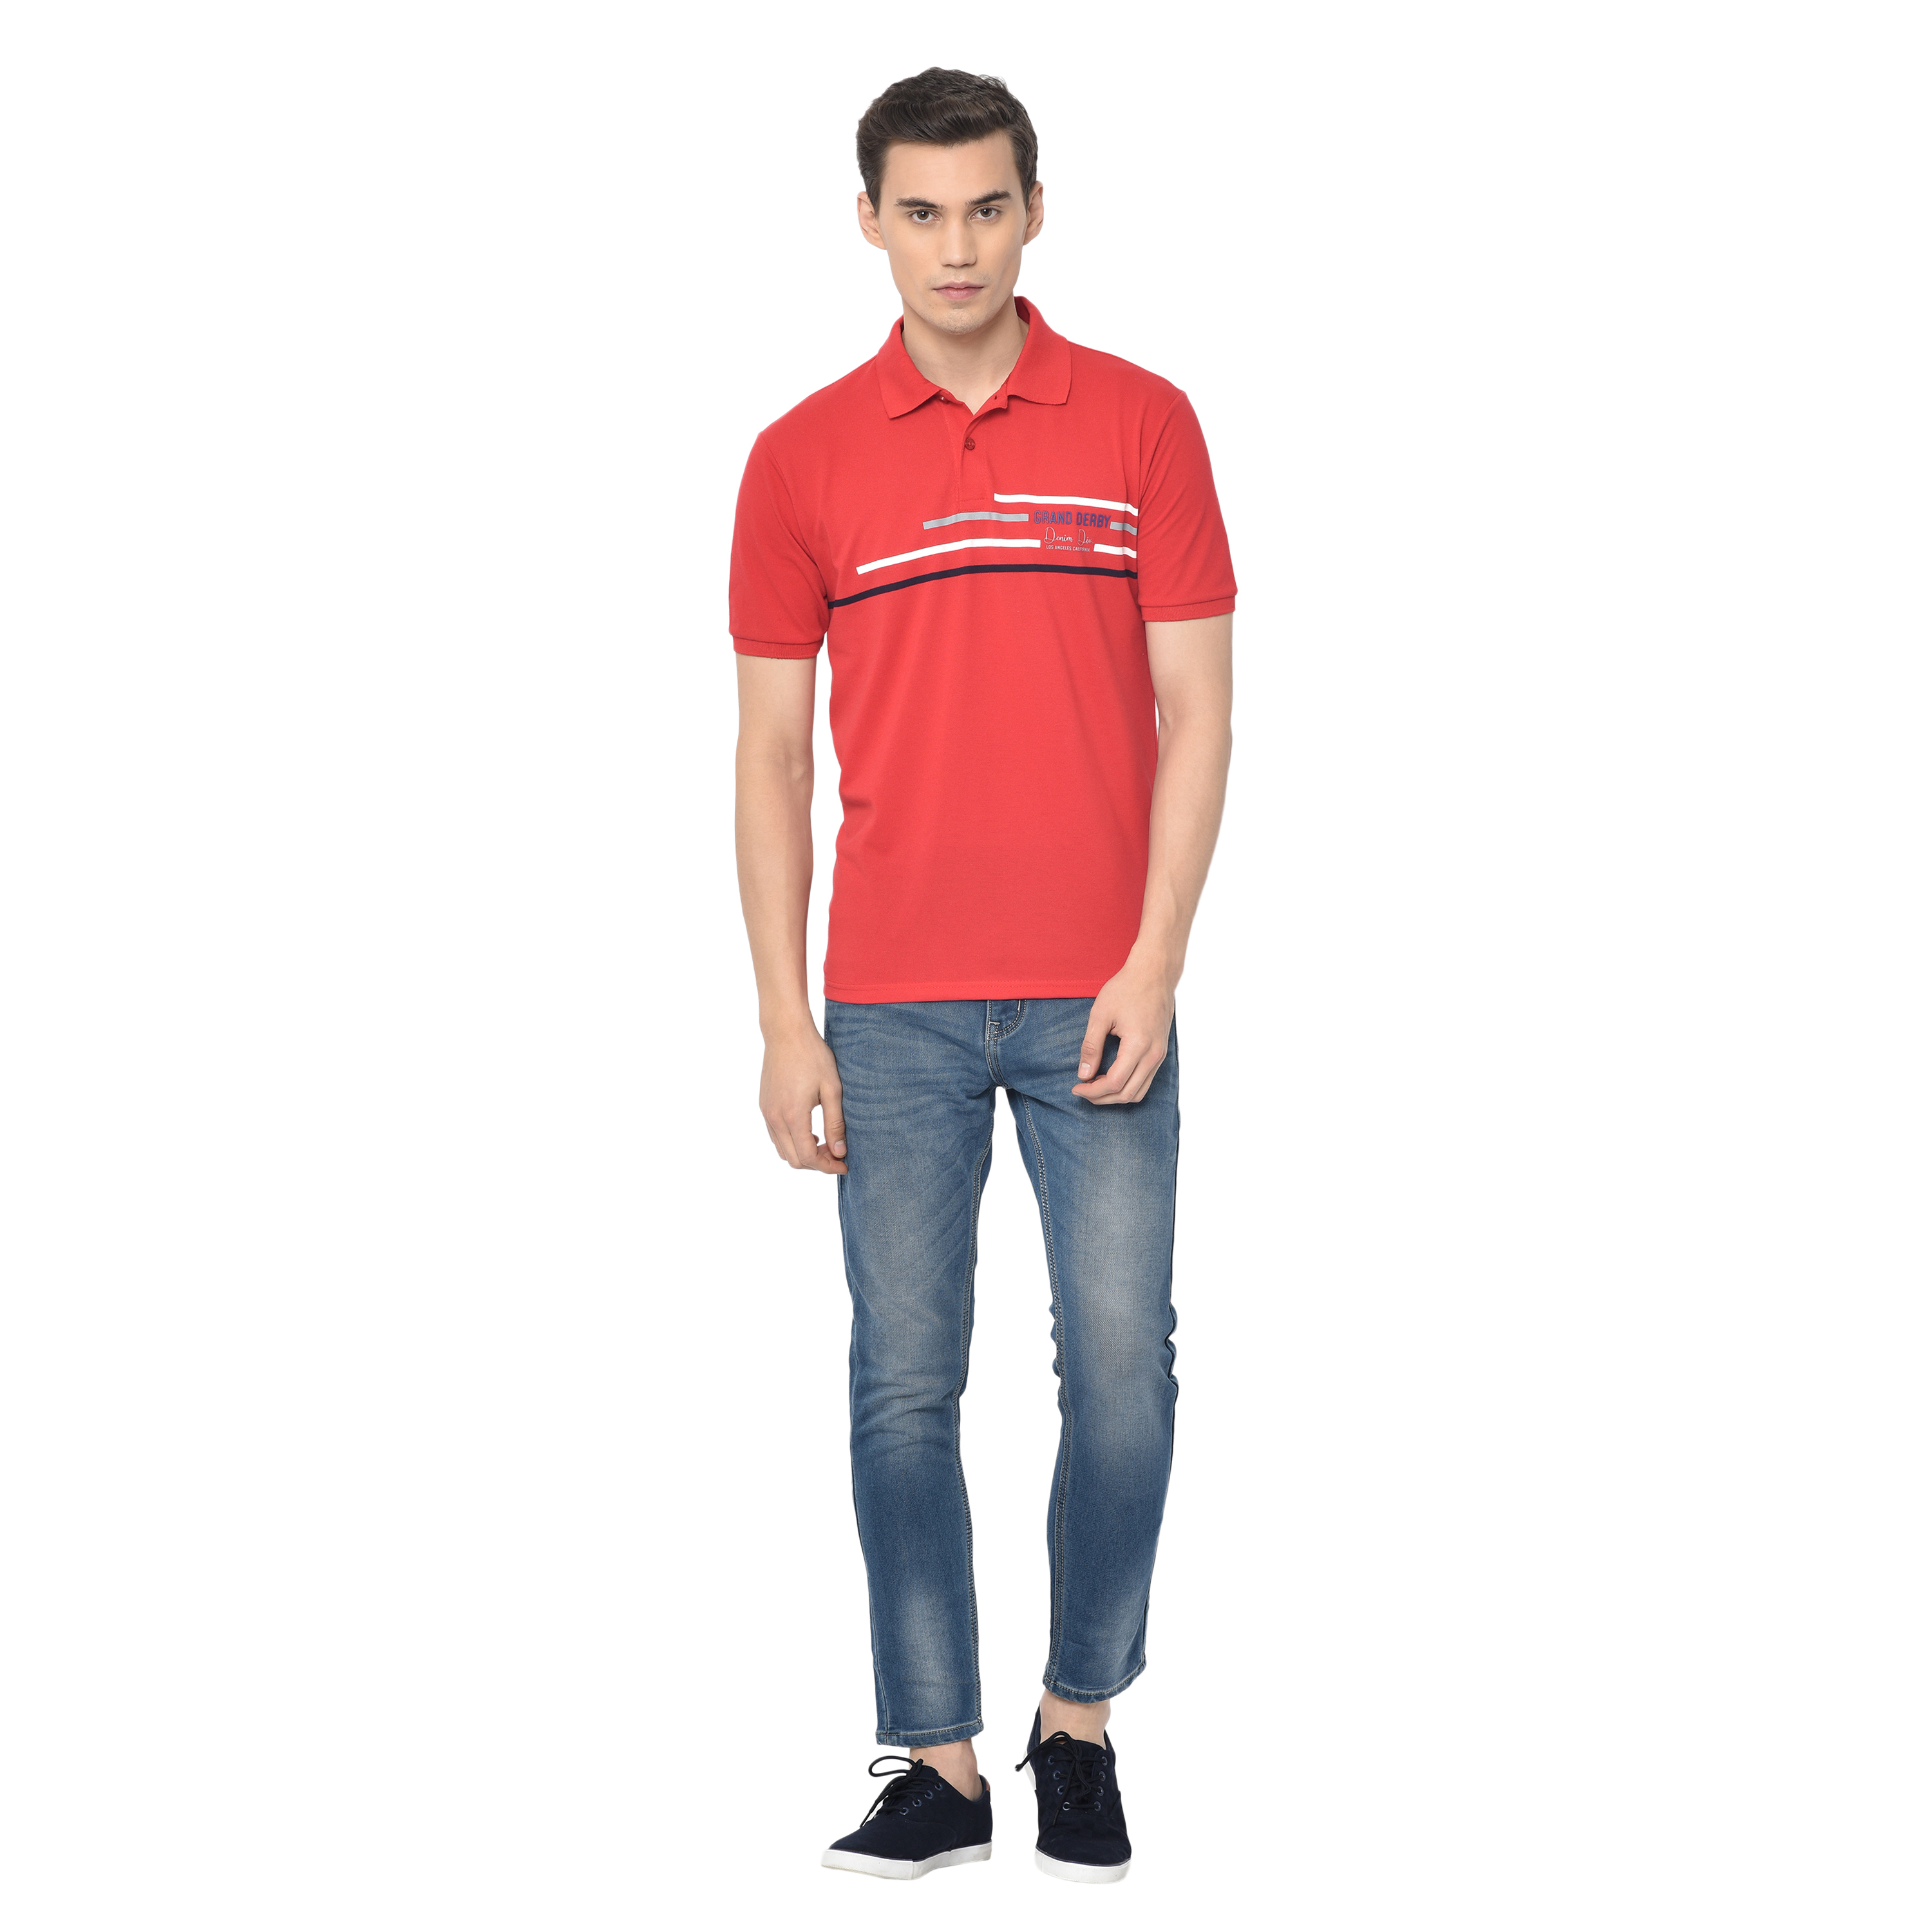 Buy Kellon Denims Ankle length Slim fit jeans for men Online @ ₹999 ...